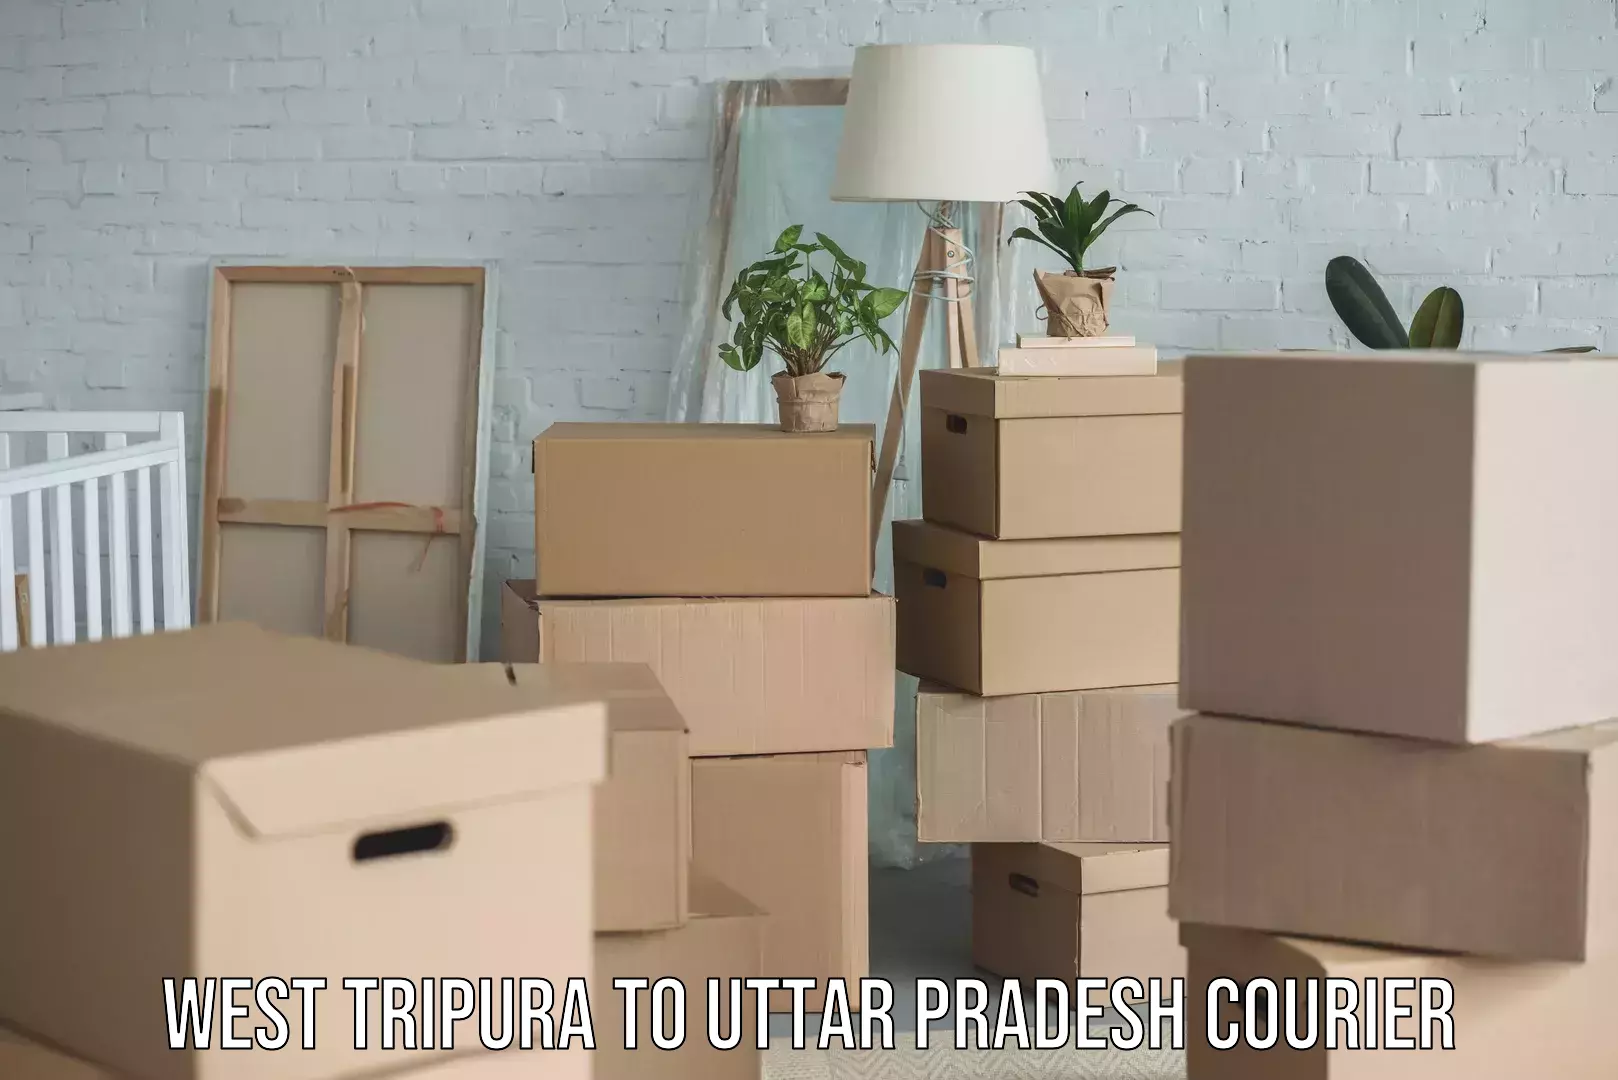 Efficient freight service West Tripura to Uttar Pradesh